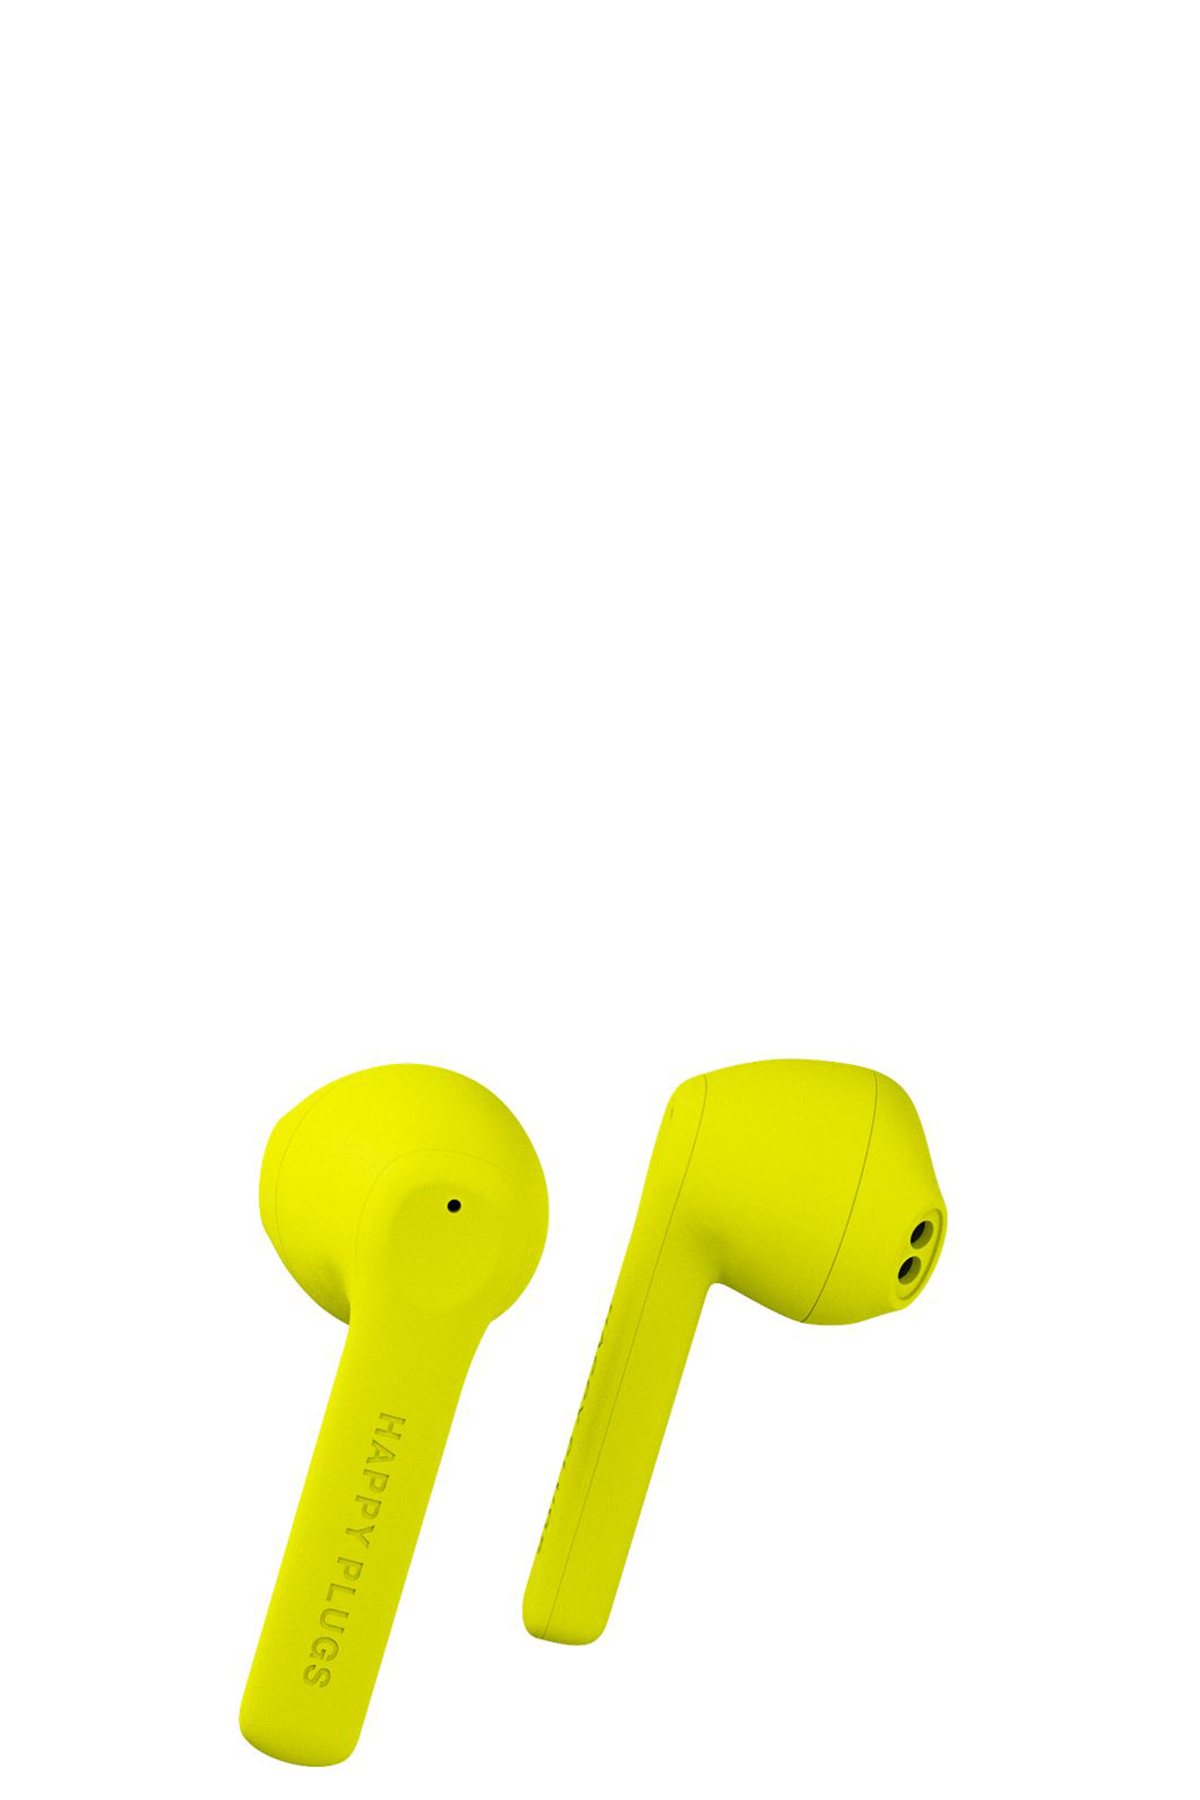 Bluetooth-Kopfhörer Air 1